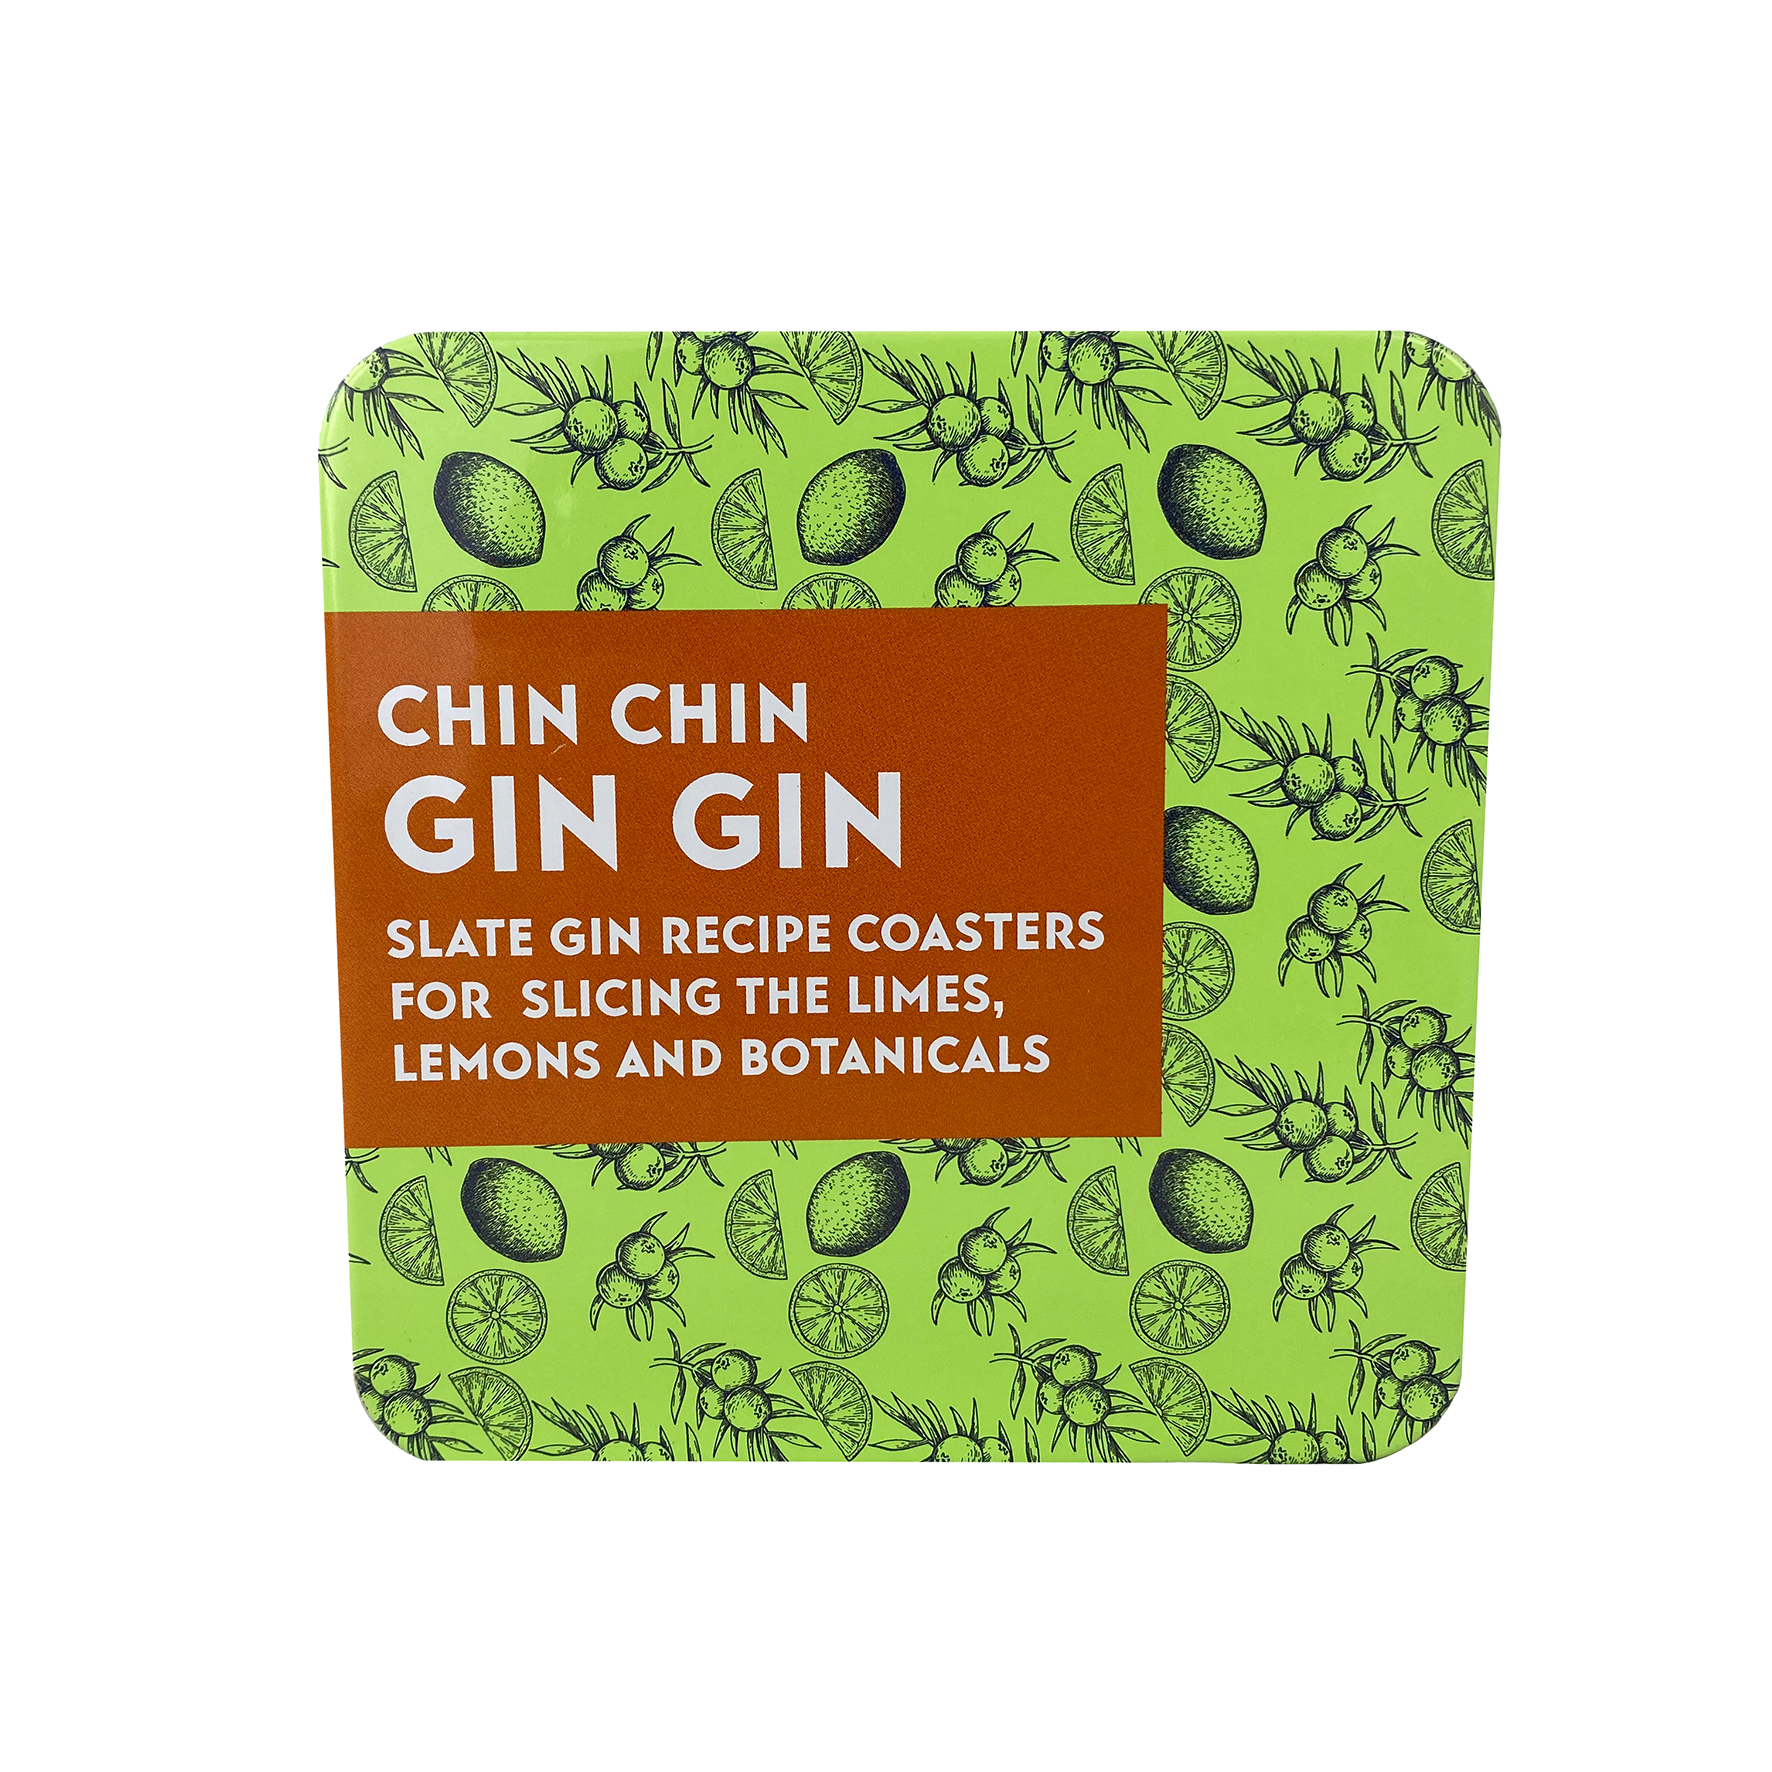 Chin Chin Gin Gin